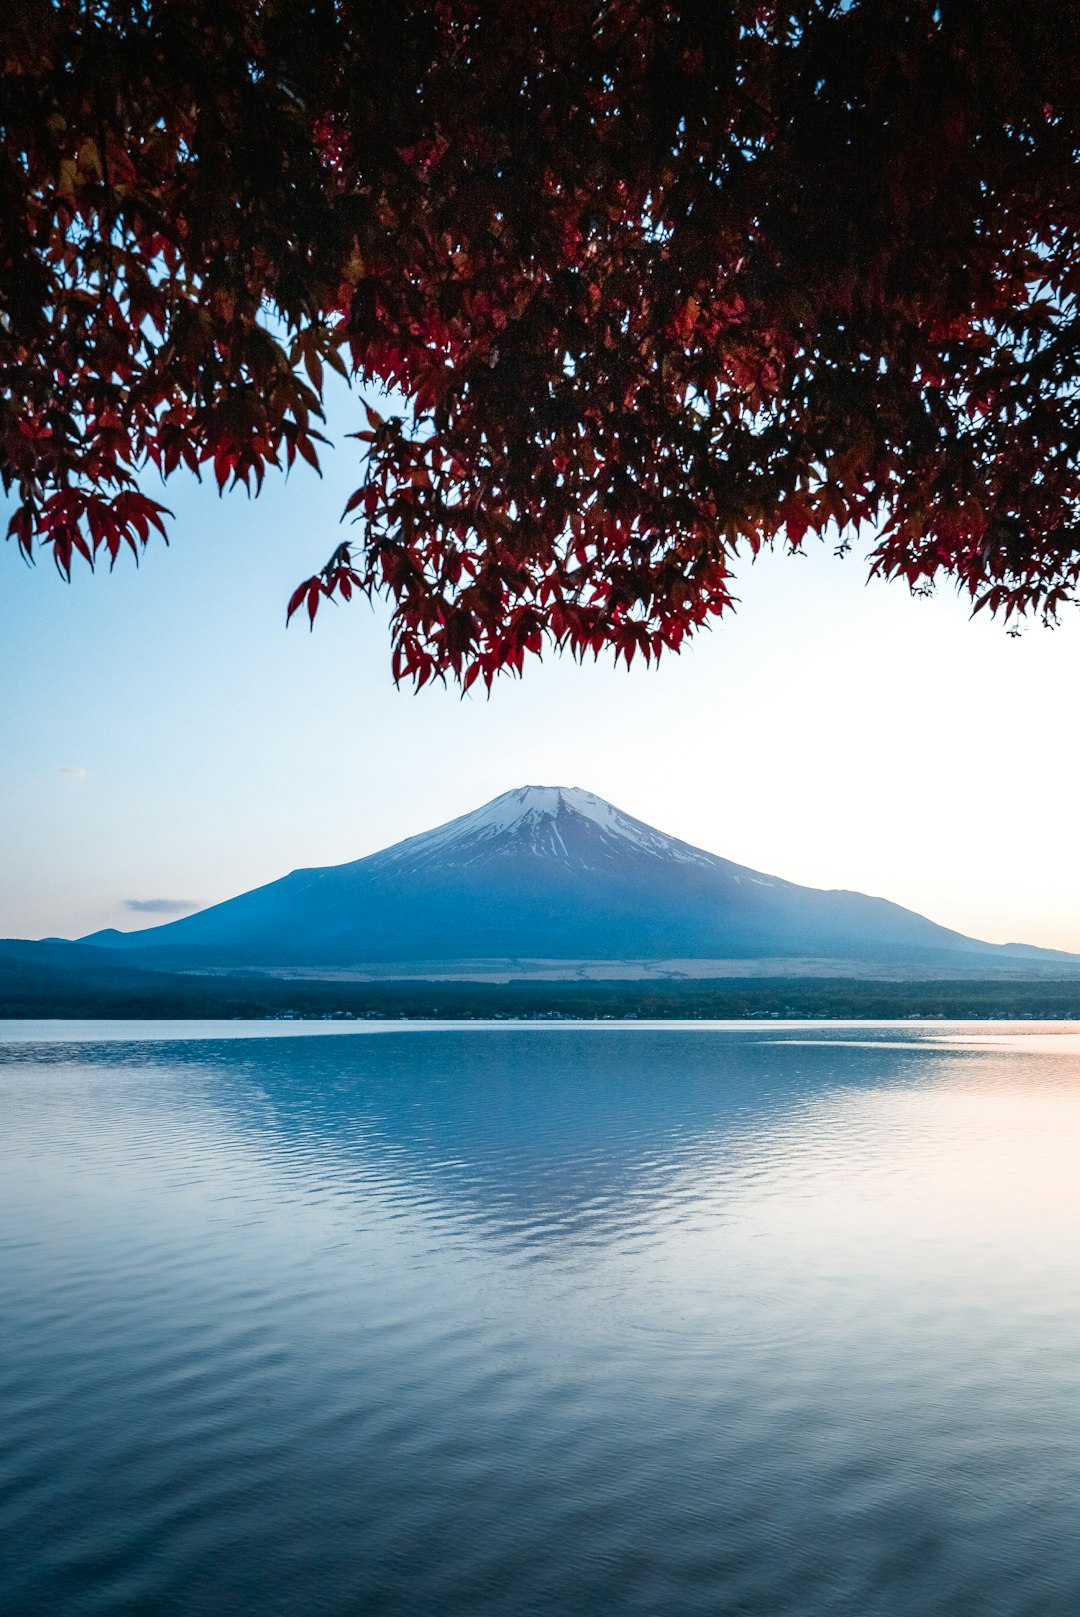 travelers stories about Lake in Mount Fuji, Japan